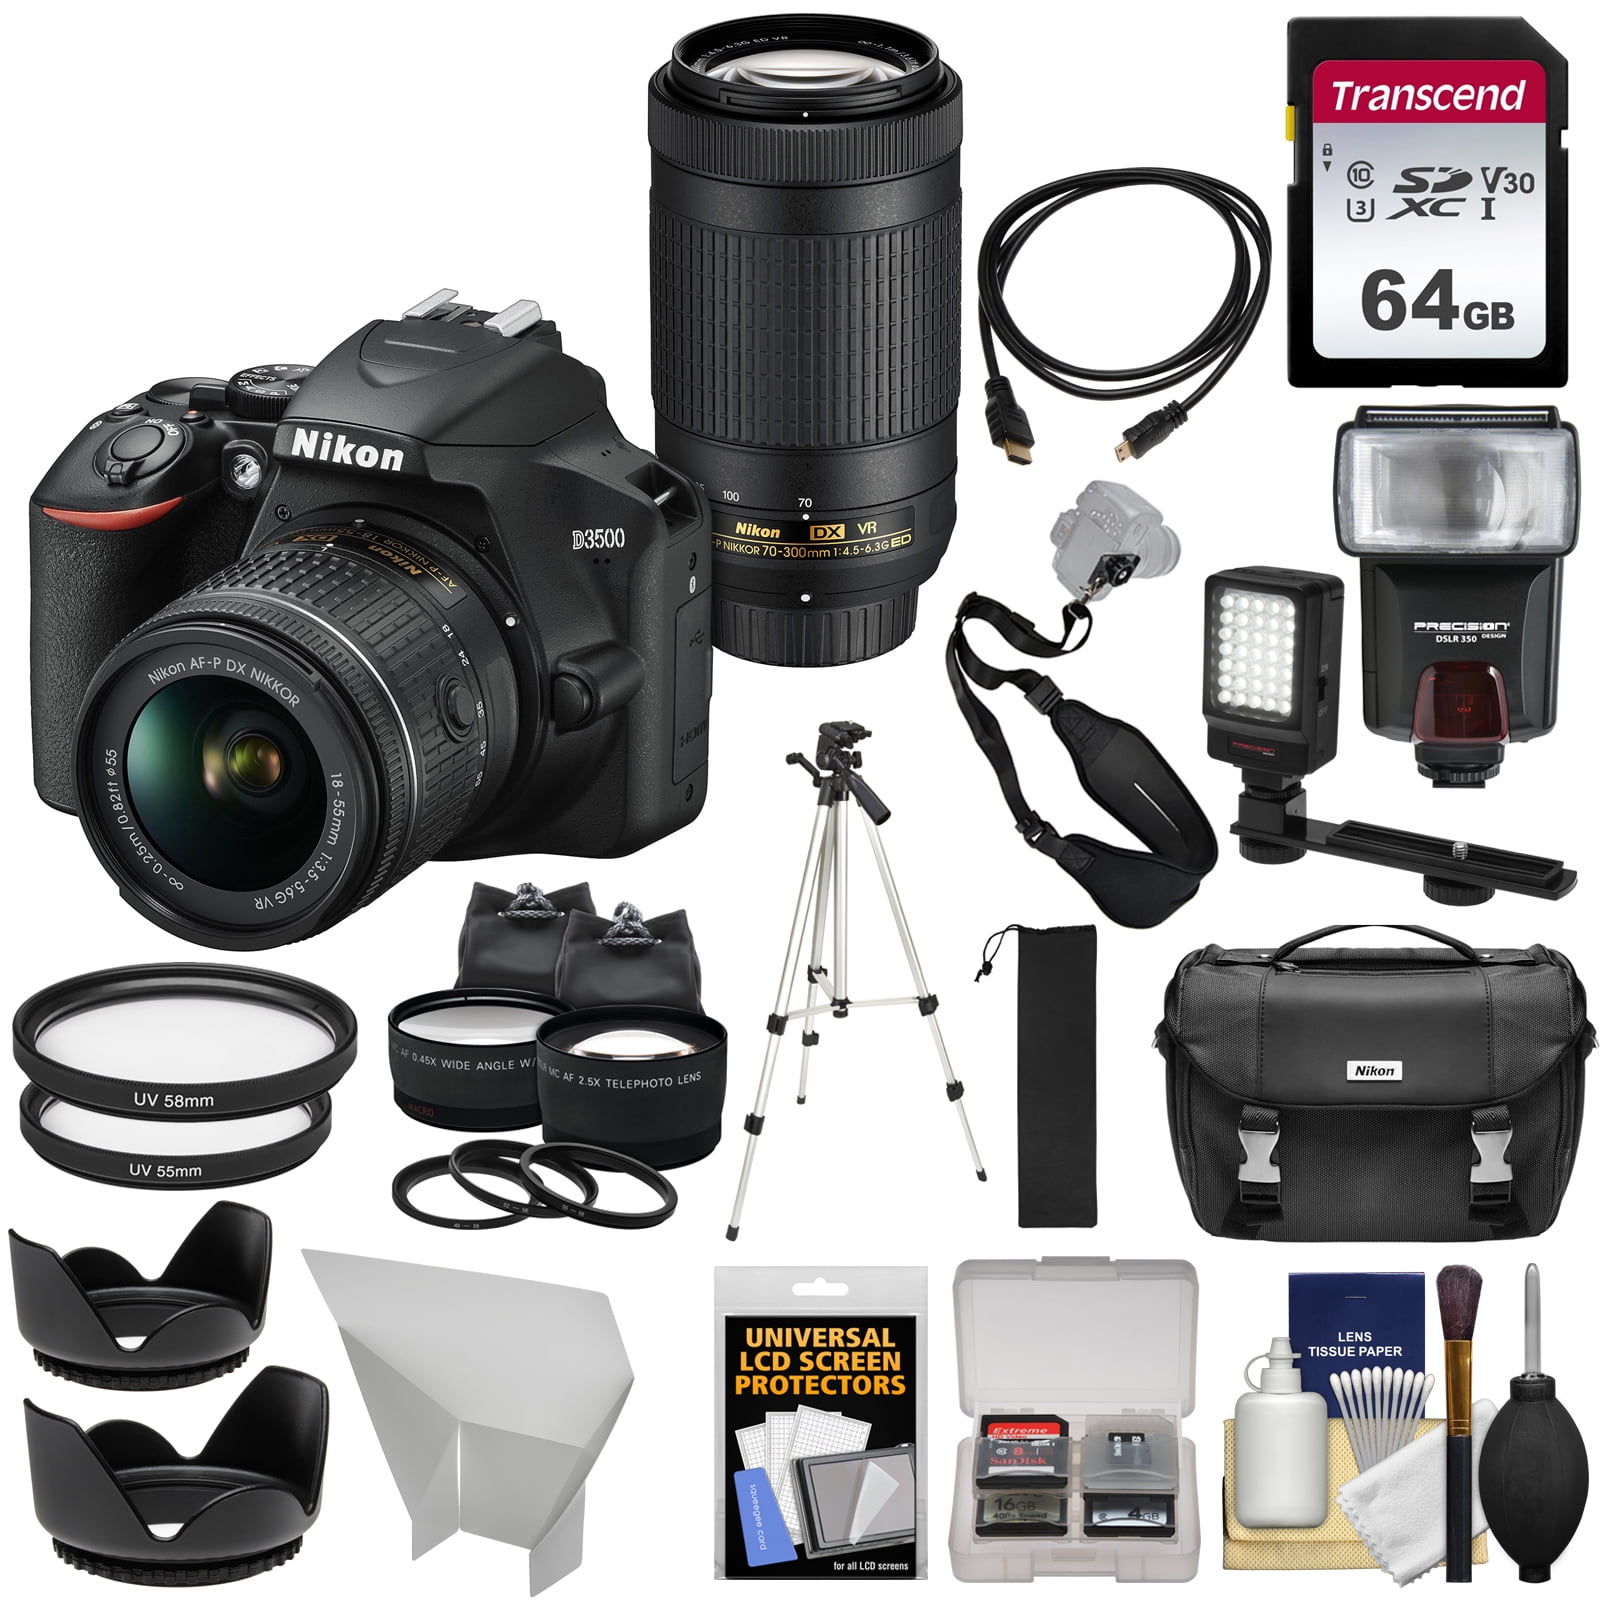 Nikon D3500 Digital SLR Camera + 18-55mm VR + 70-300mm DX AF-P Lenses with  64GB Card + Case + Flash + Tripod + LED Light + 2 Lens Kit